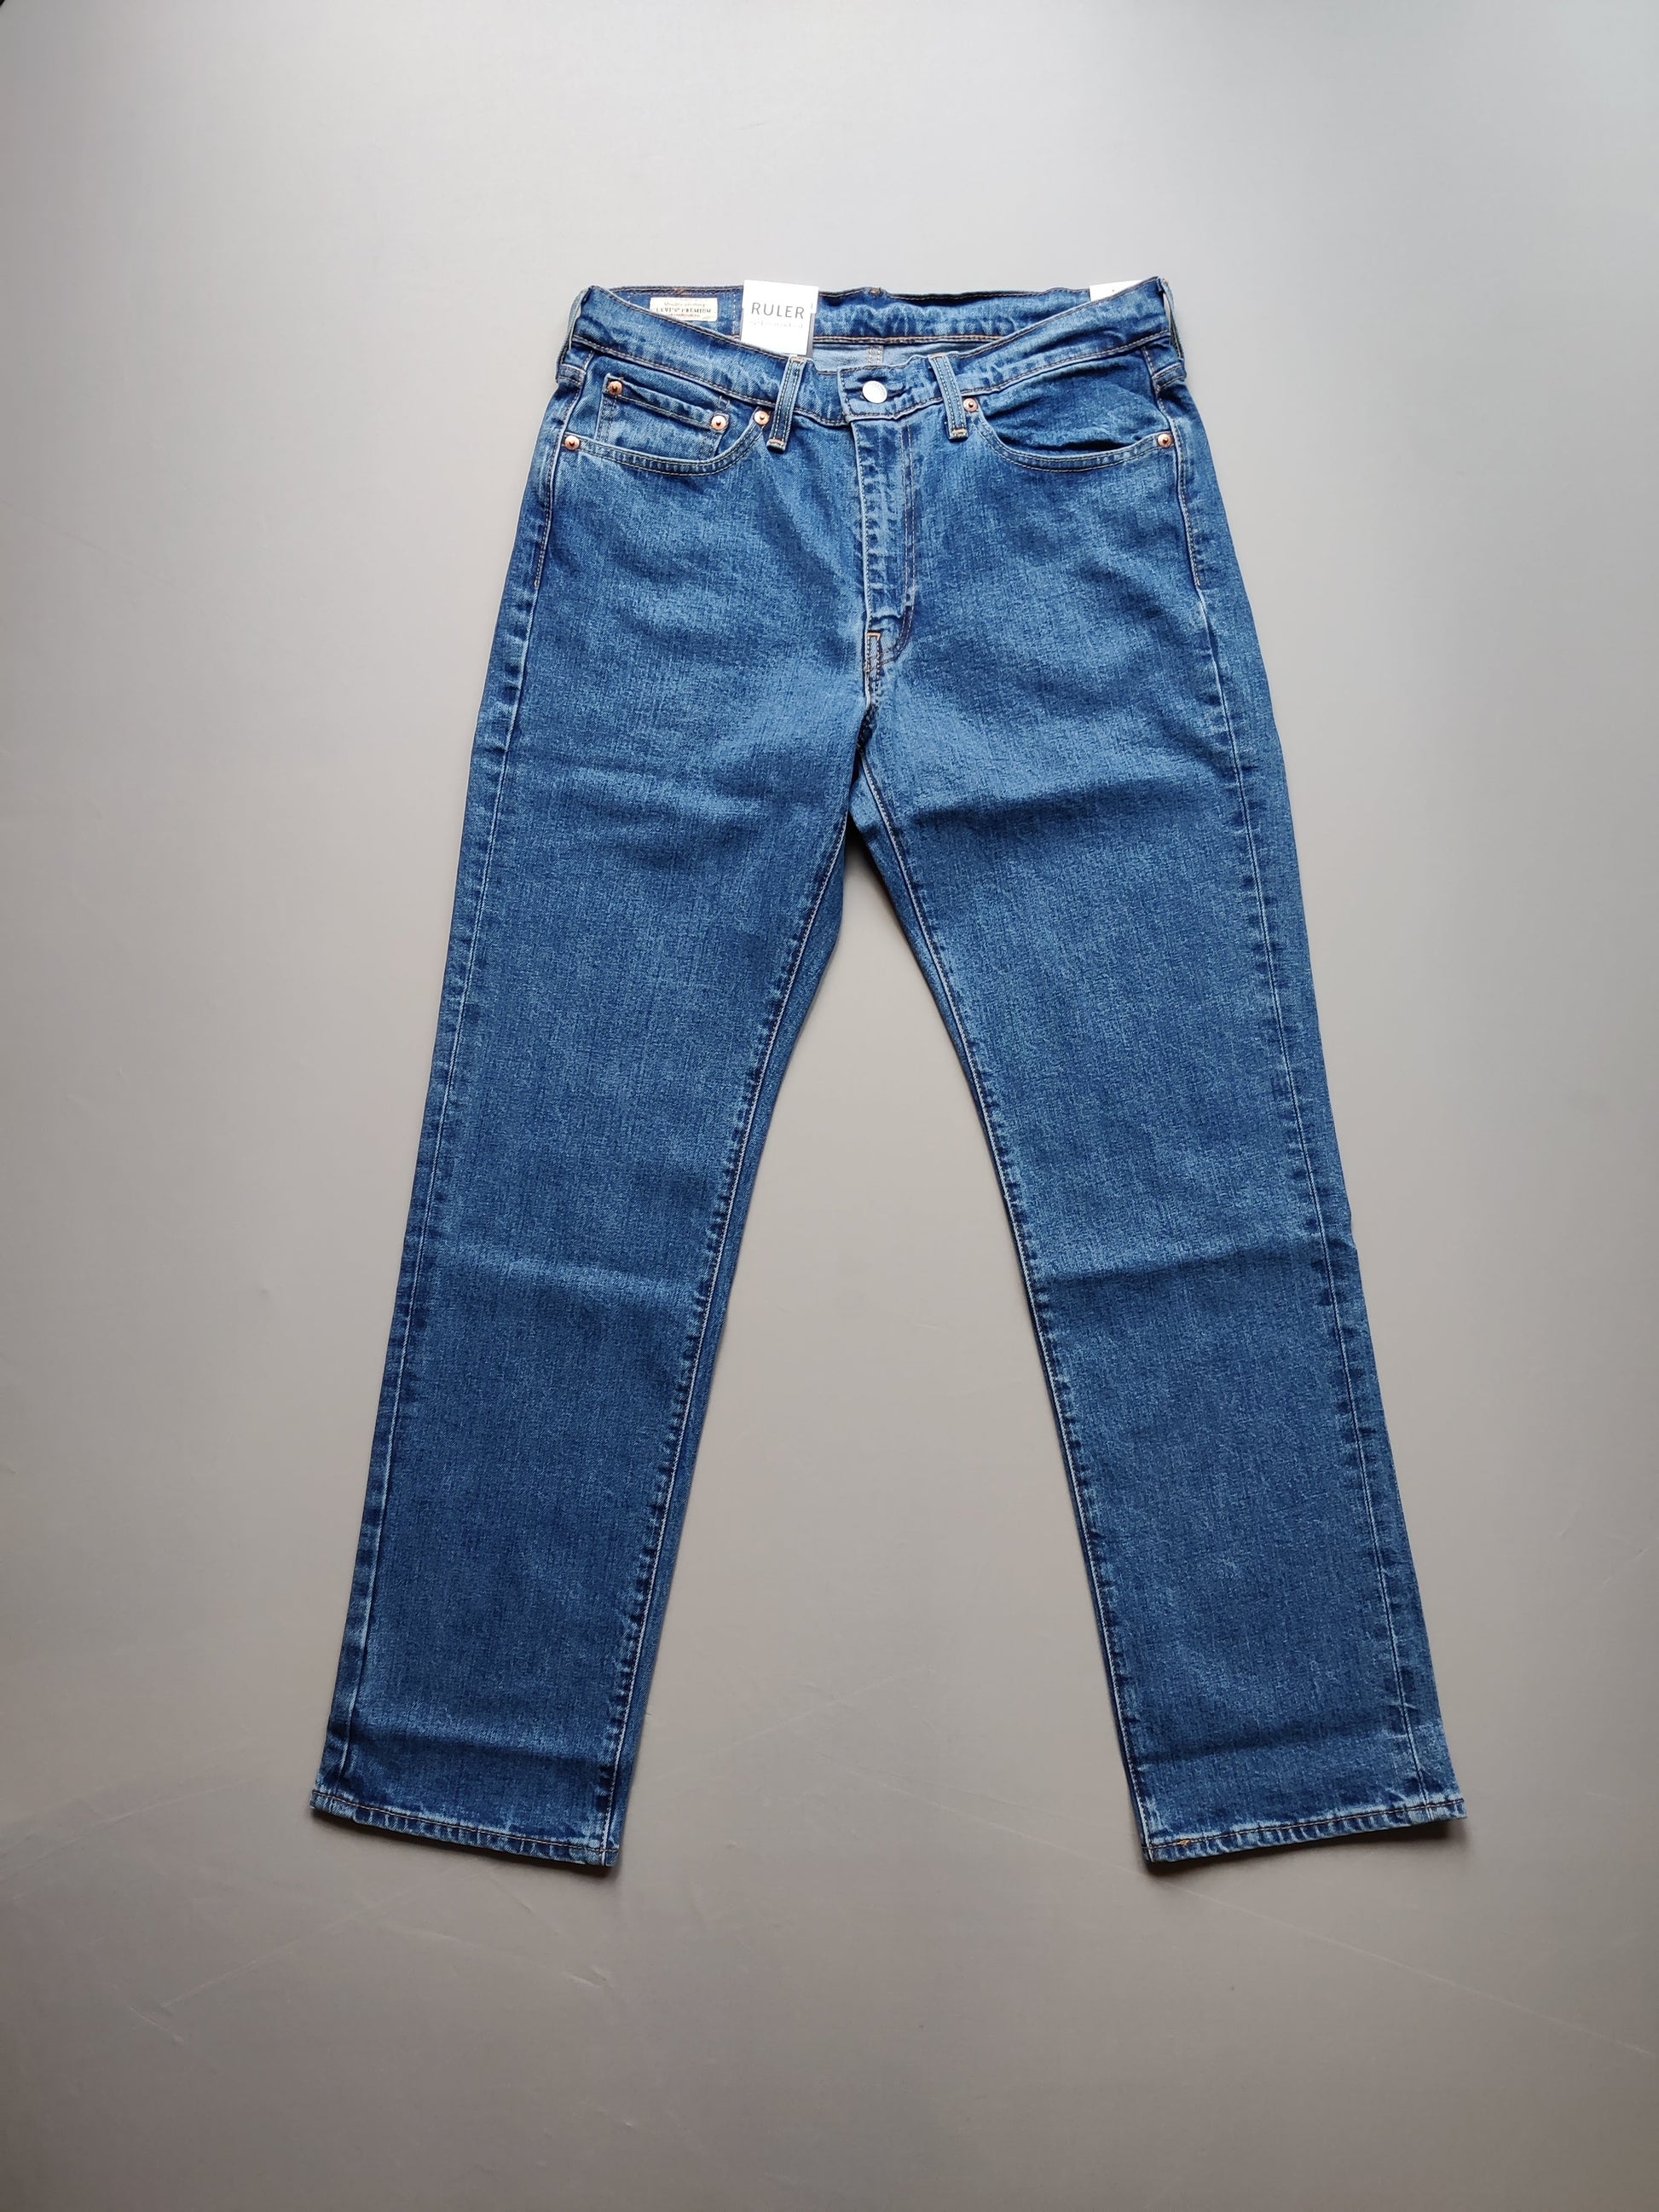 Levi's 514 Jeans (in Shorter Leg – Ruler of London